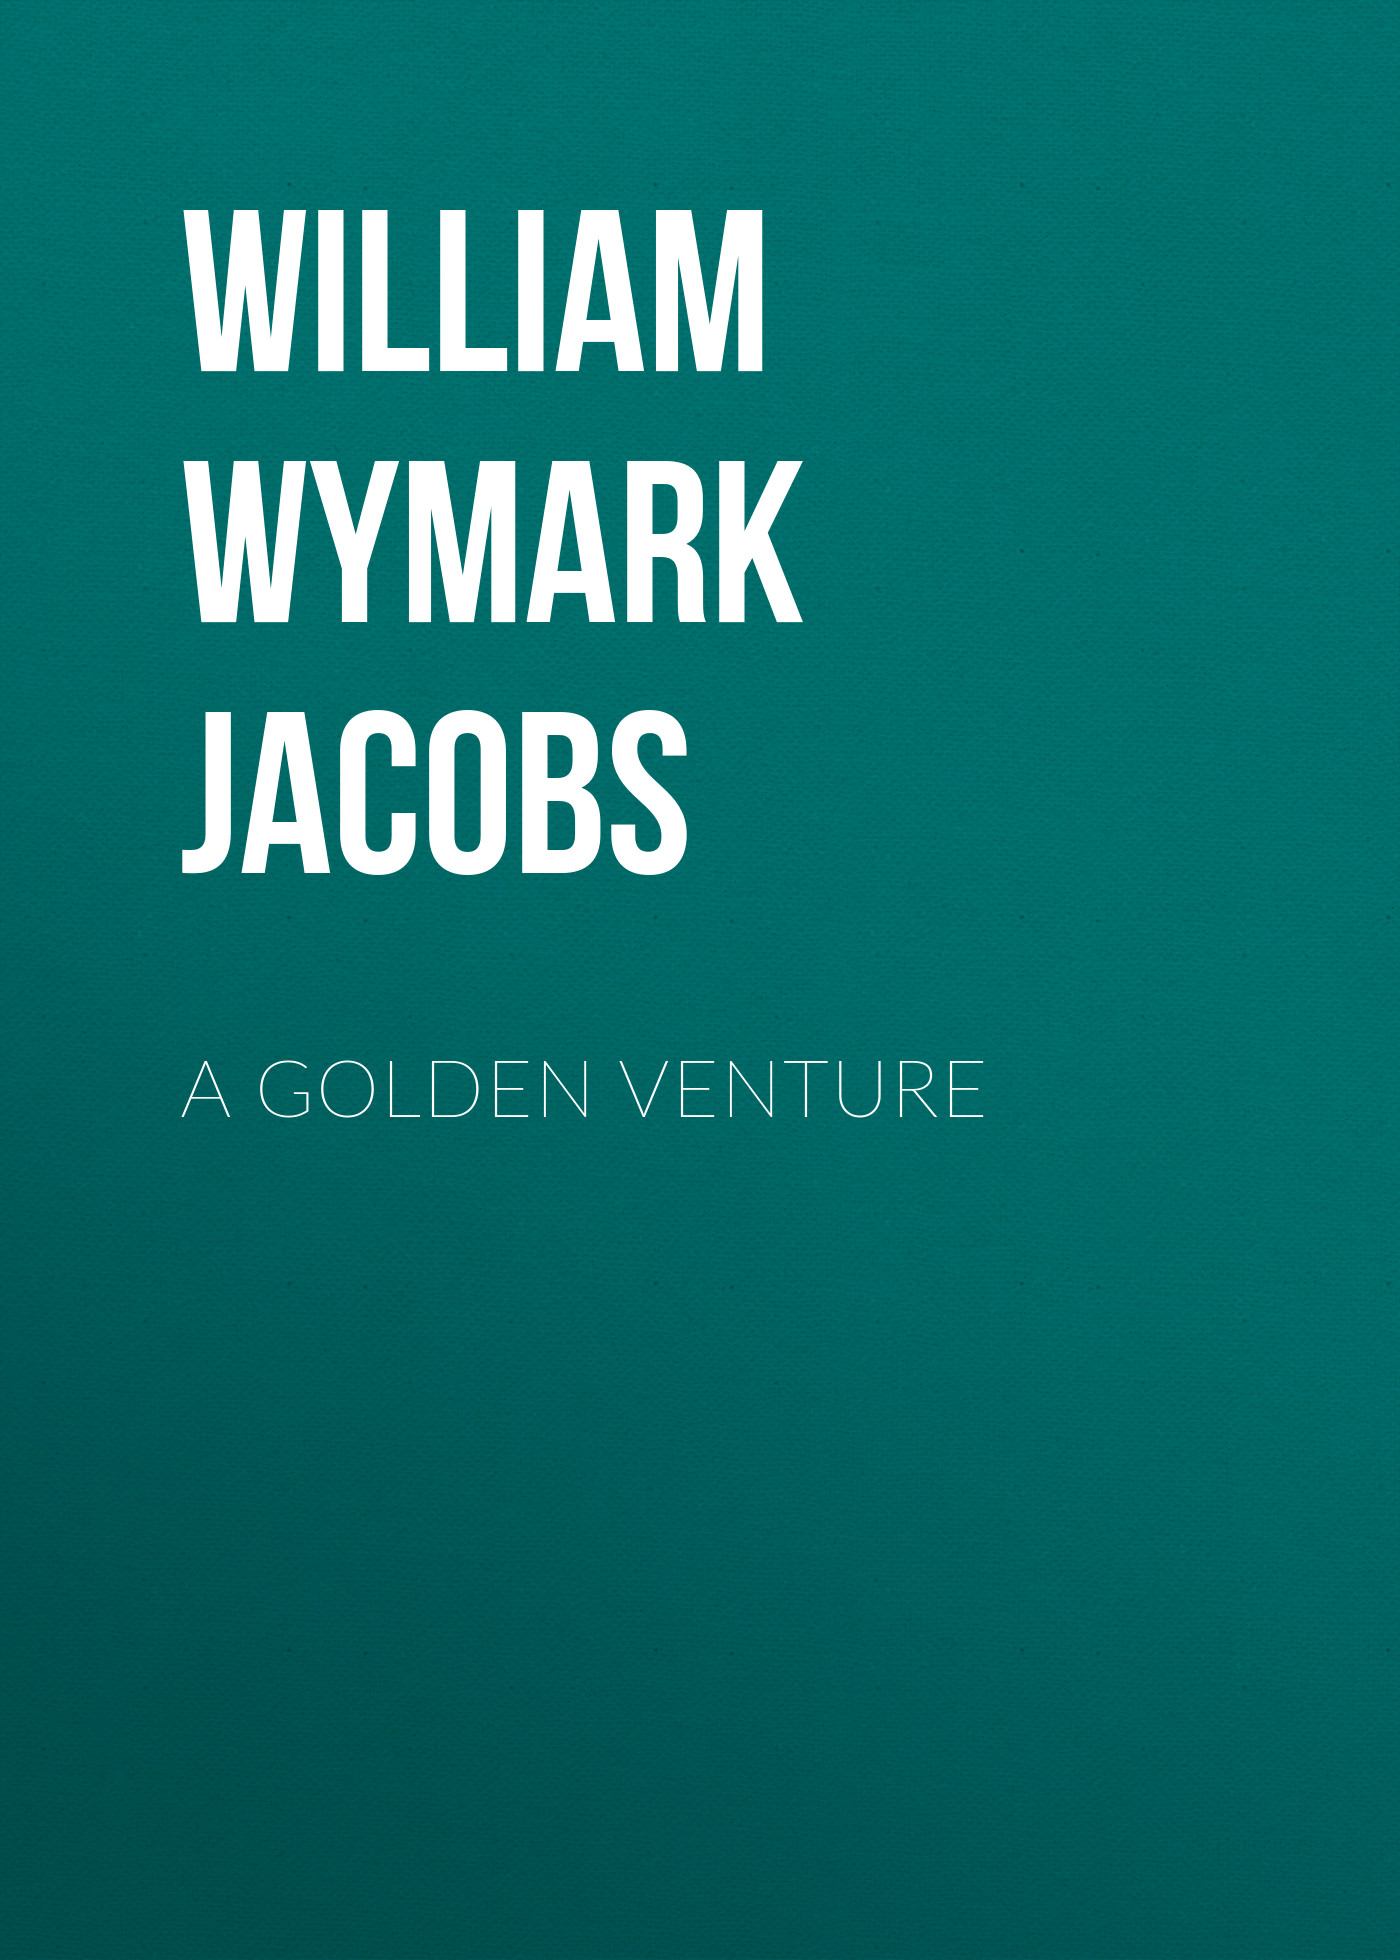 Книга A Golden Venture из серии , созданная William Wymark Jacobs, может относится к жанру Зарубежный юмор, Зарубежная старинная литература, Зарубежная классика. Стоимость электронной книги A Golden Venture с идентификатором 34844014 составляет 0 руб.